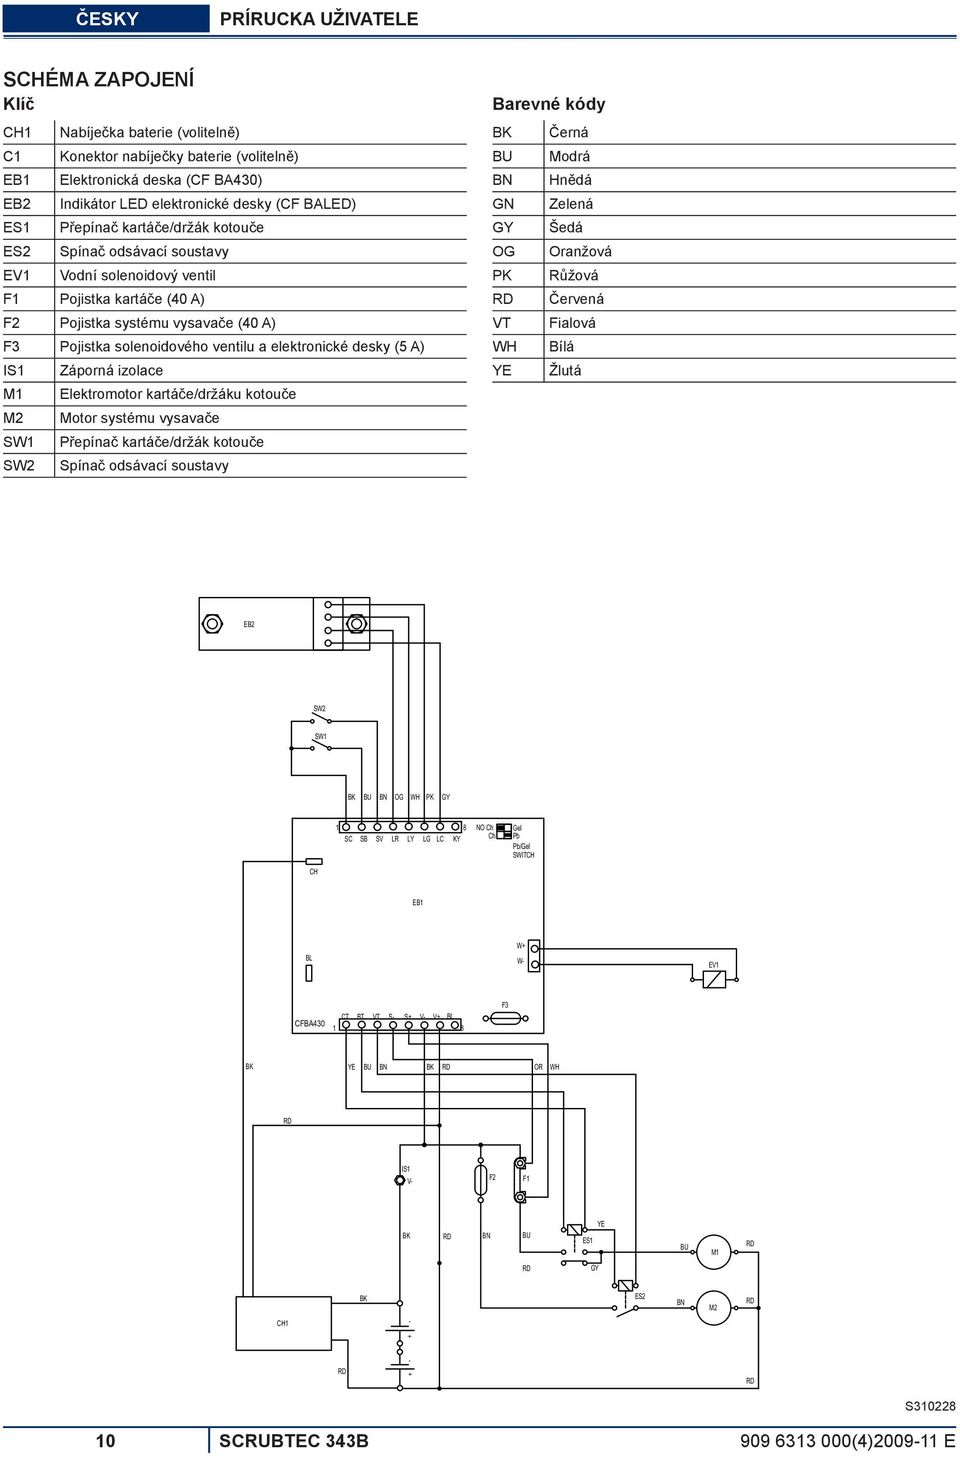 ventilu a elektronické desky (5 A) IS1 Záporná izolace M1 Elektromotor kartáče/držáku kotouče M2 Motor systému vysavače SW1 Přepínač kartáče/držák kotouče SW2 Spínač odsávací soustavy Barevné kódy BK